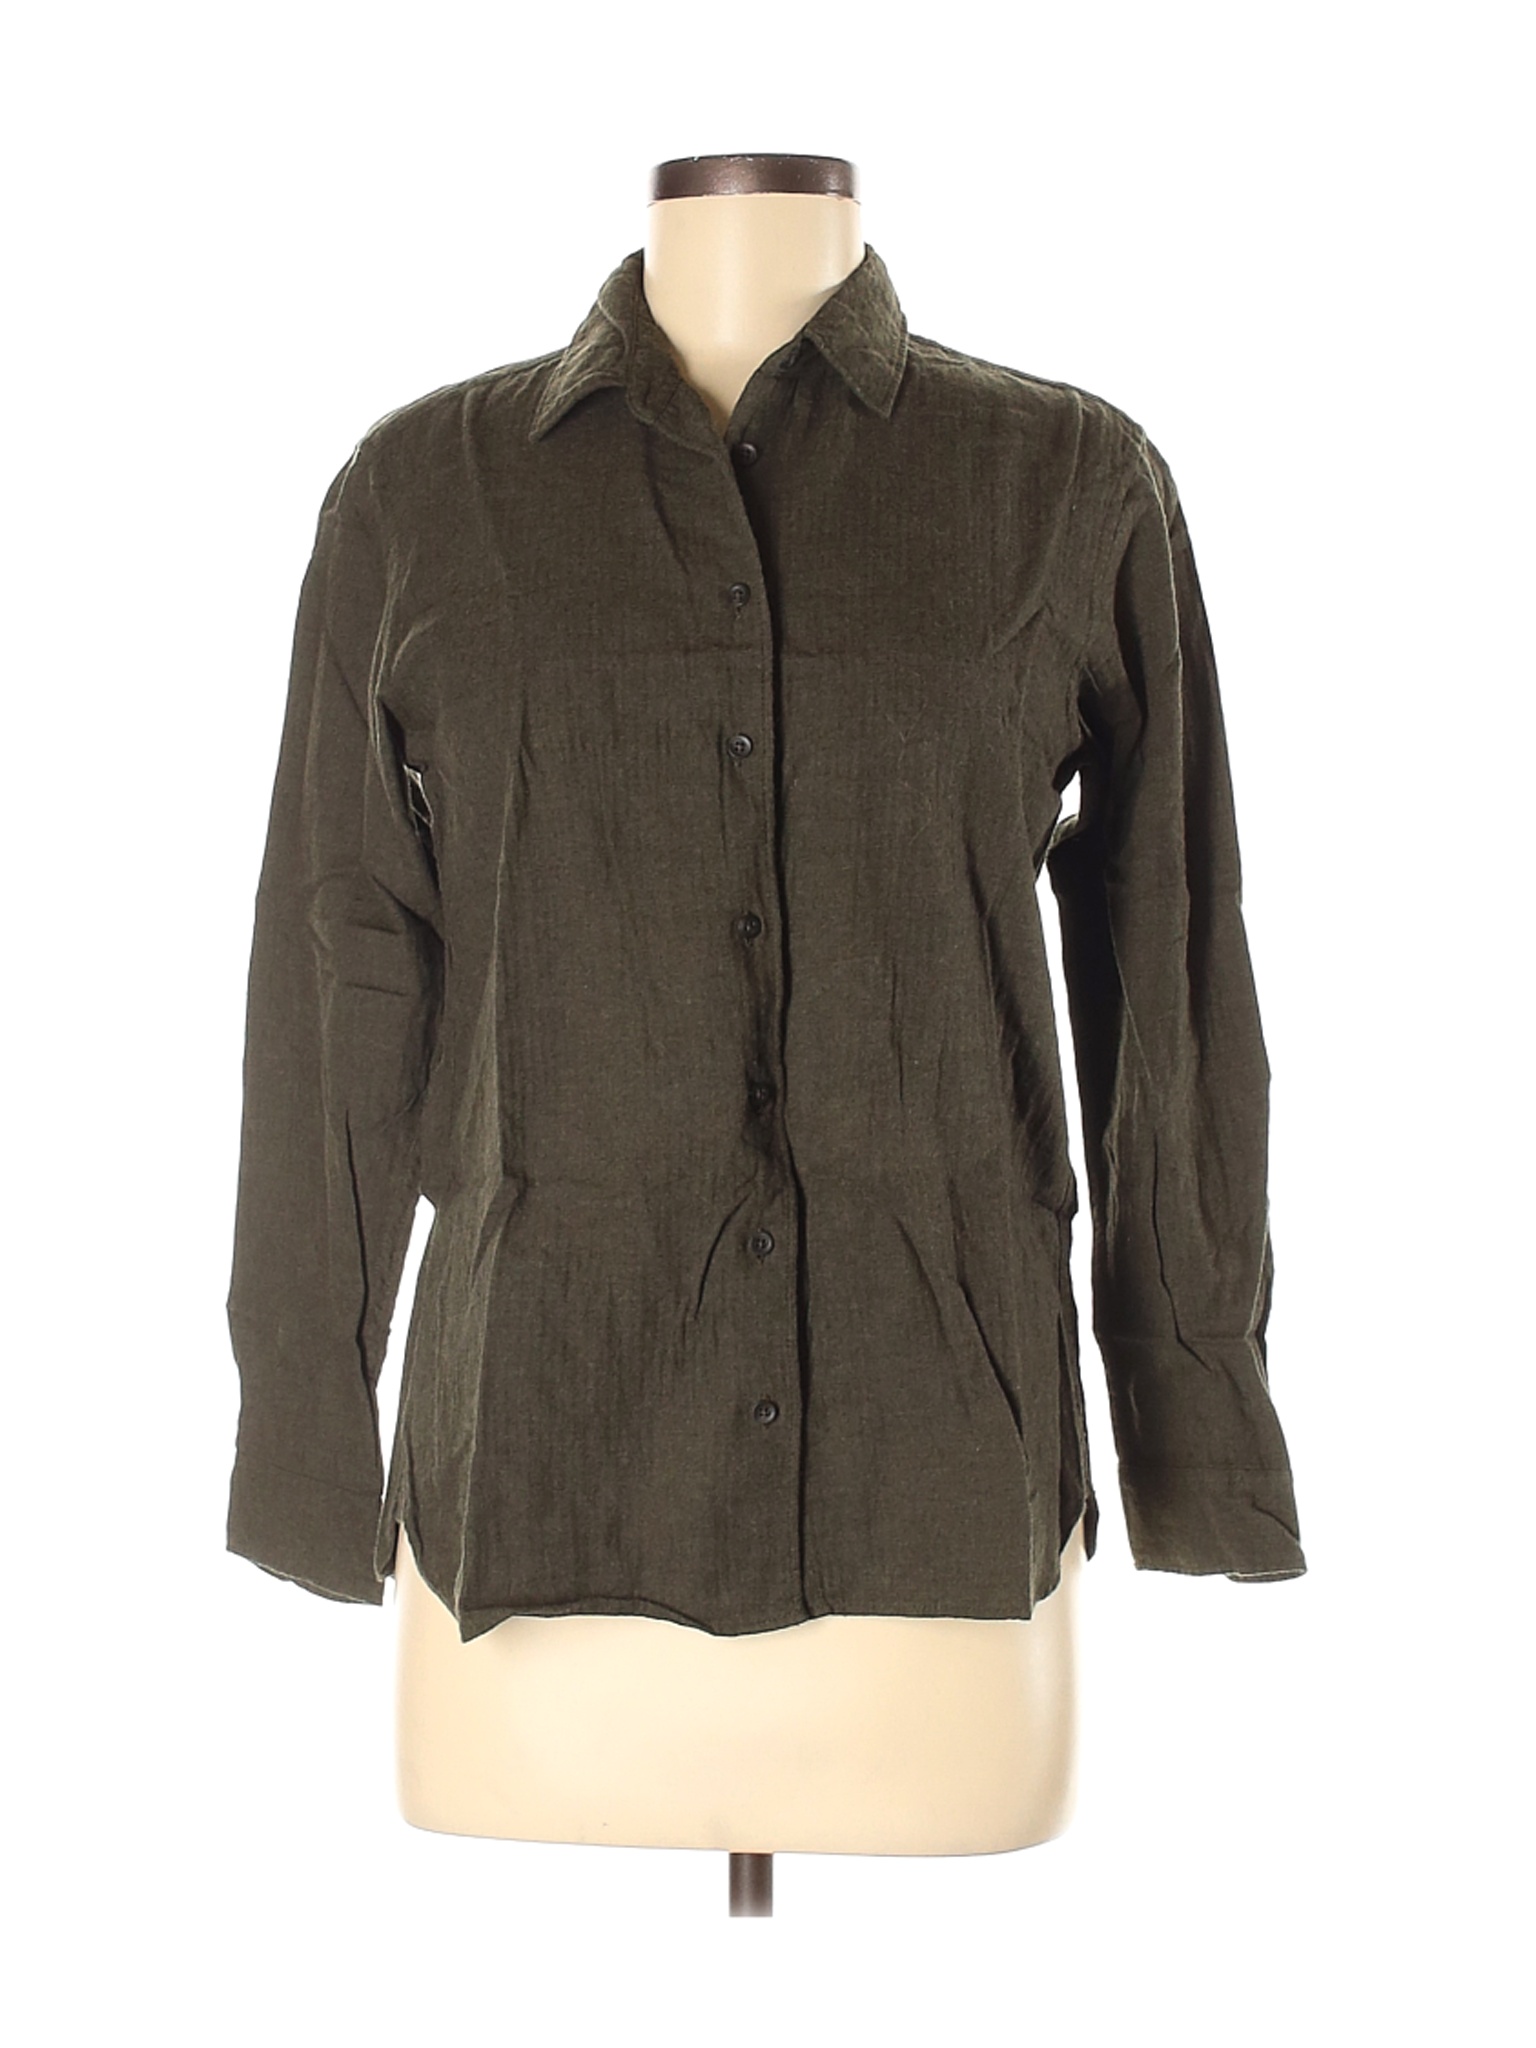 Uniqlo Women Green Long Sleeve Button-Down Shirt M | eBay